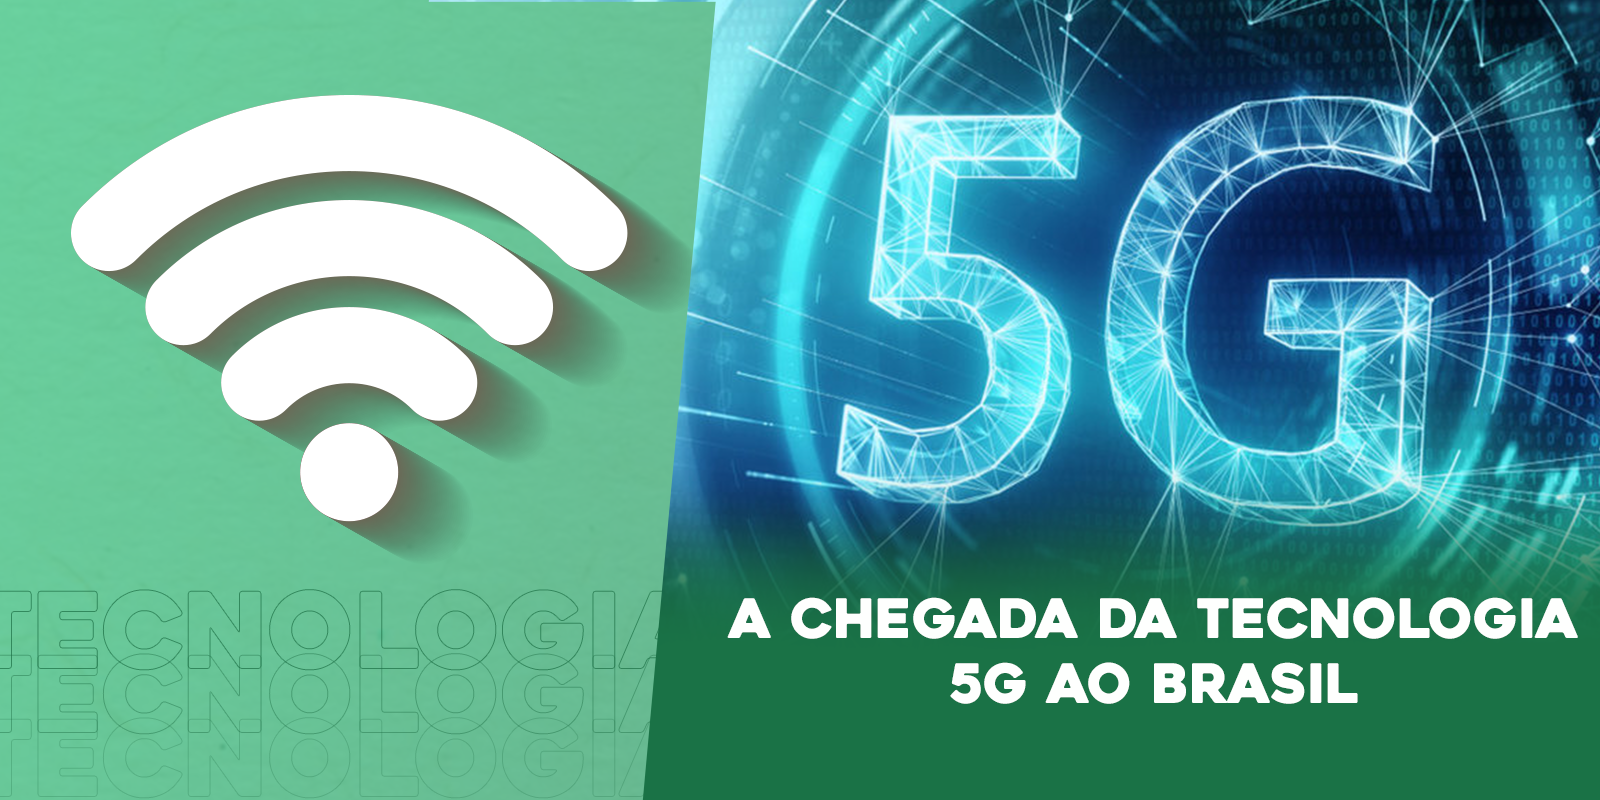 A chegada da internet 5G no Brasil